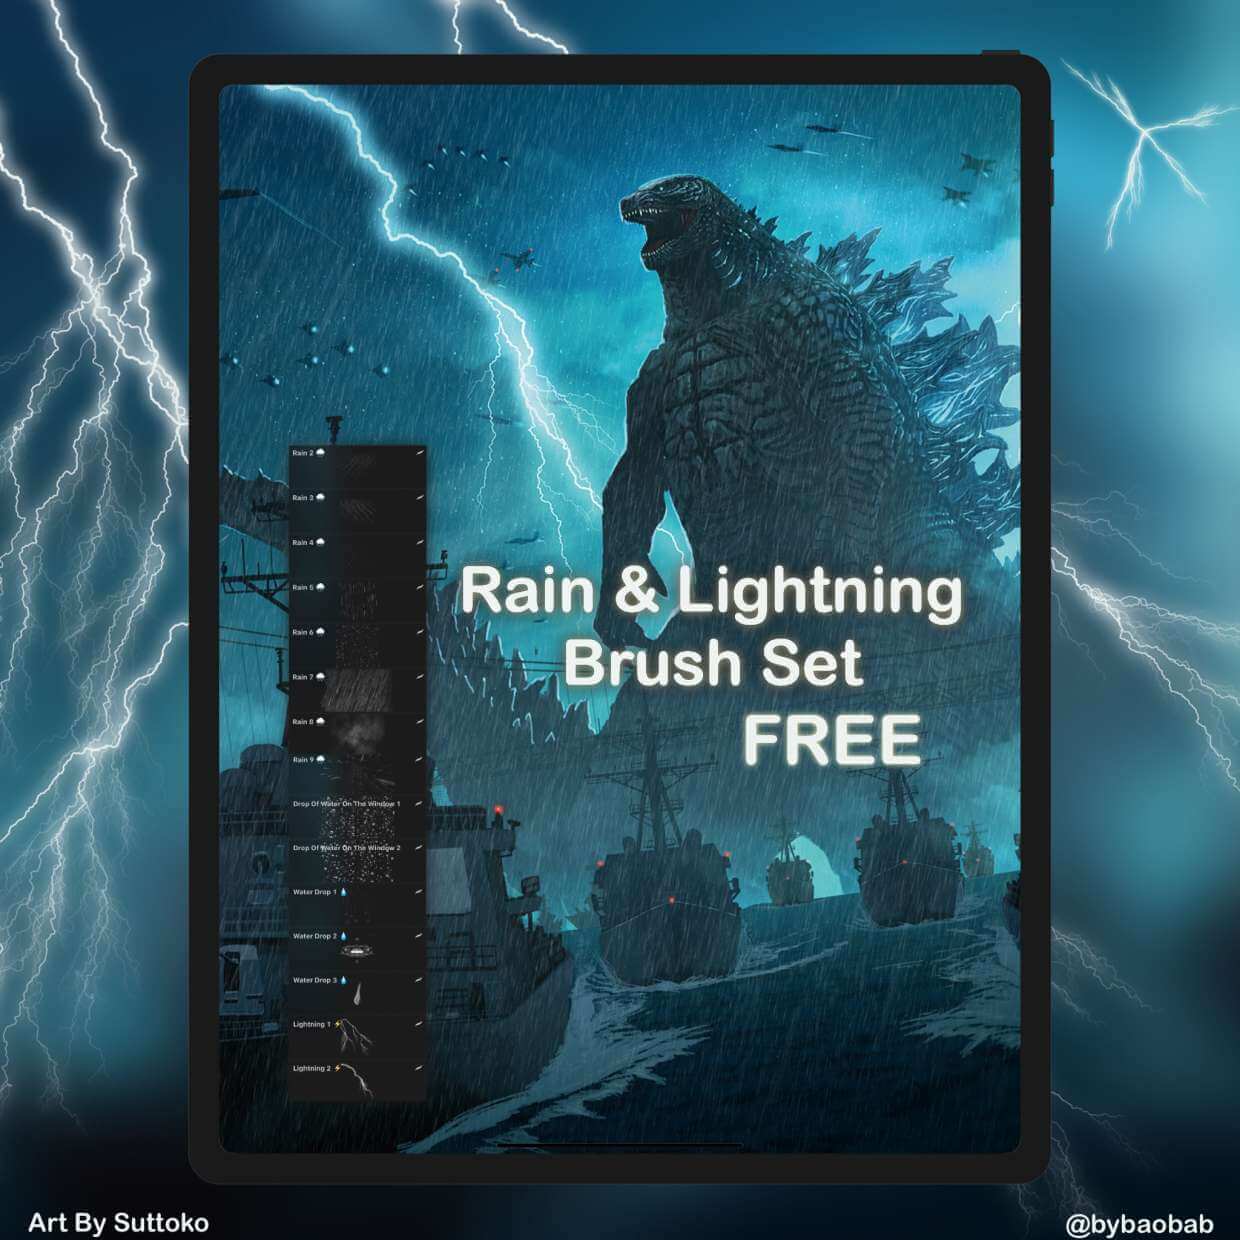 FREE Rain & Lightning Brush Set! - Free Brushes for Procreate